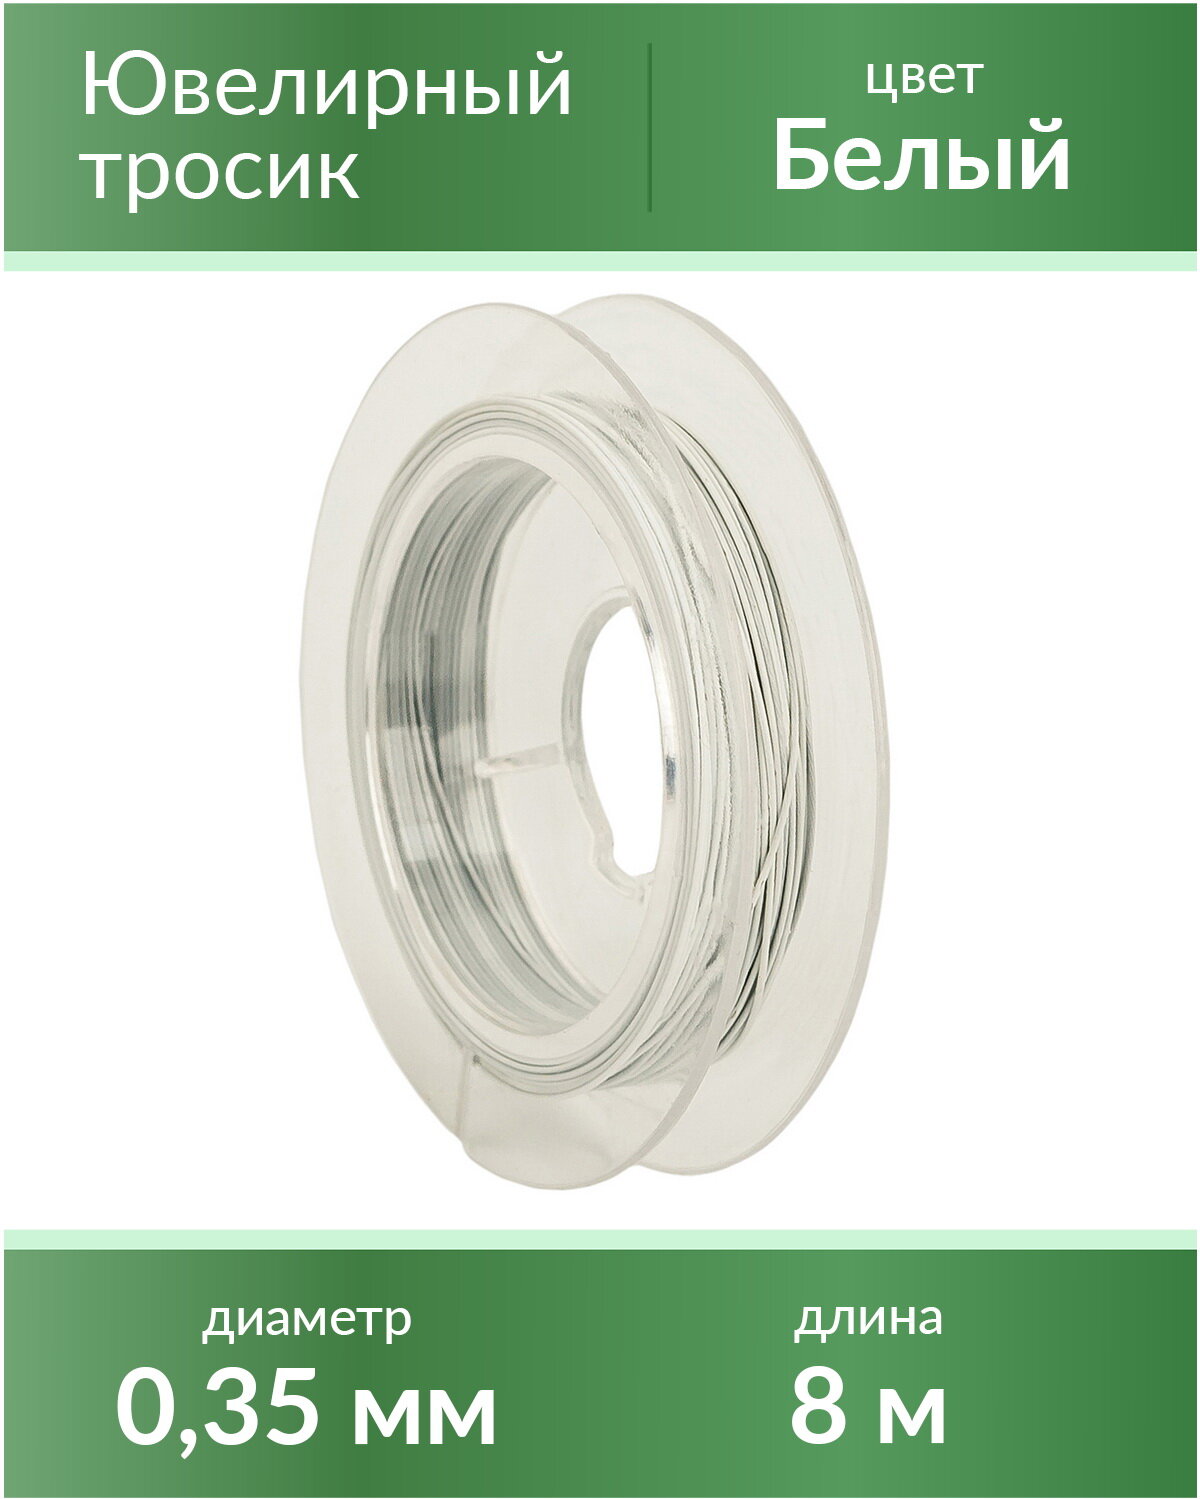 Тросик ювелирный (ланка), диаметр 0,35 мм, цвет: белый